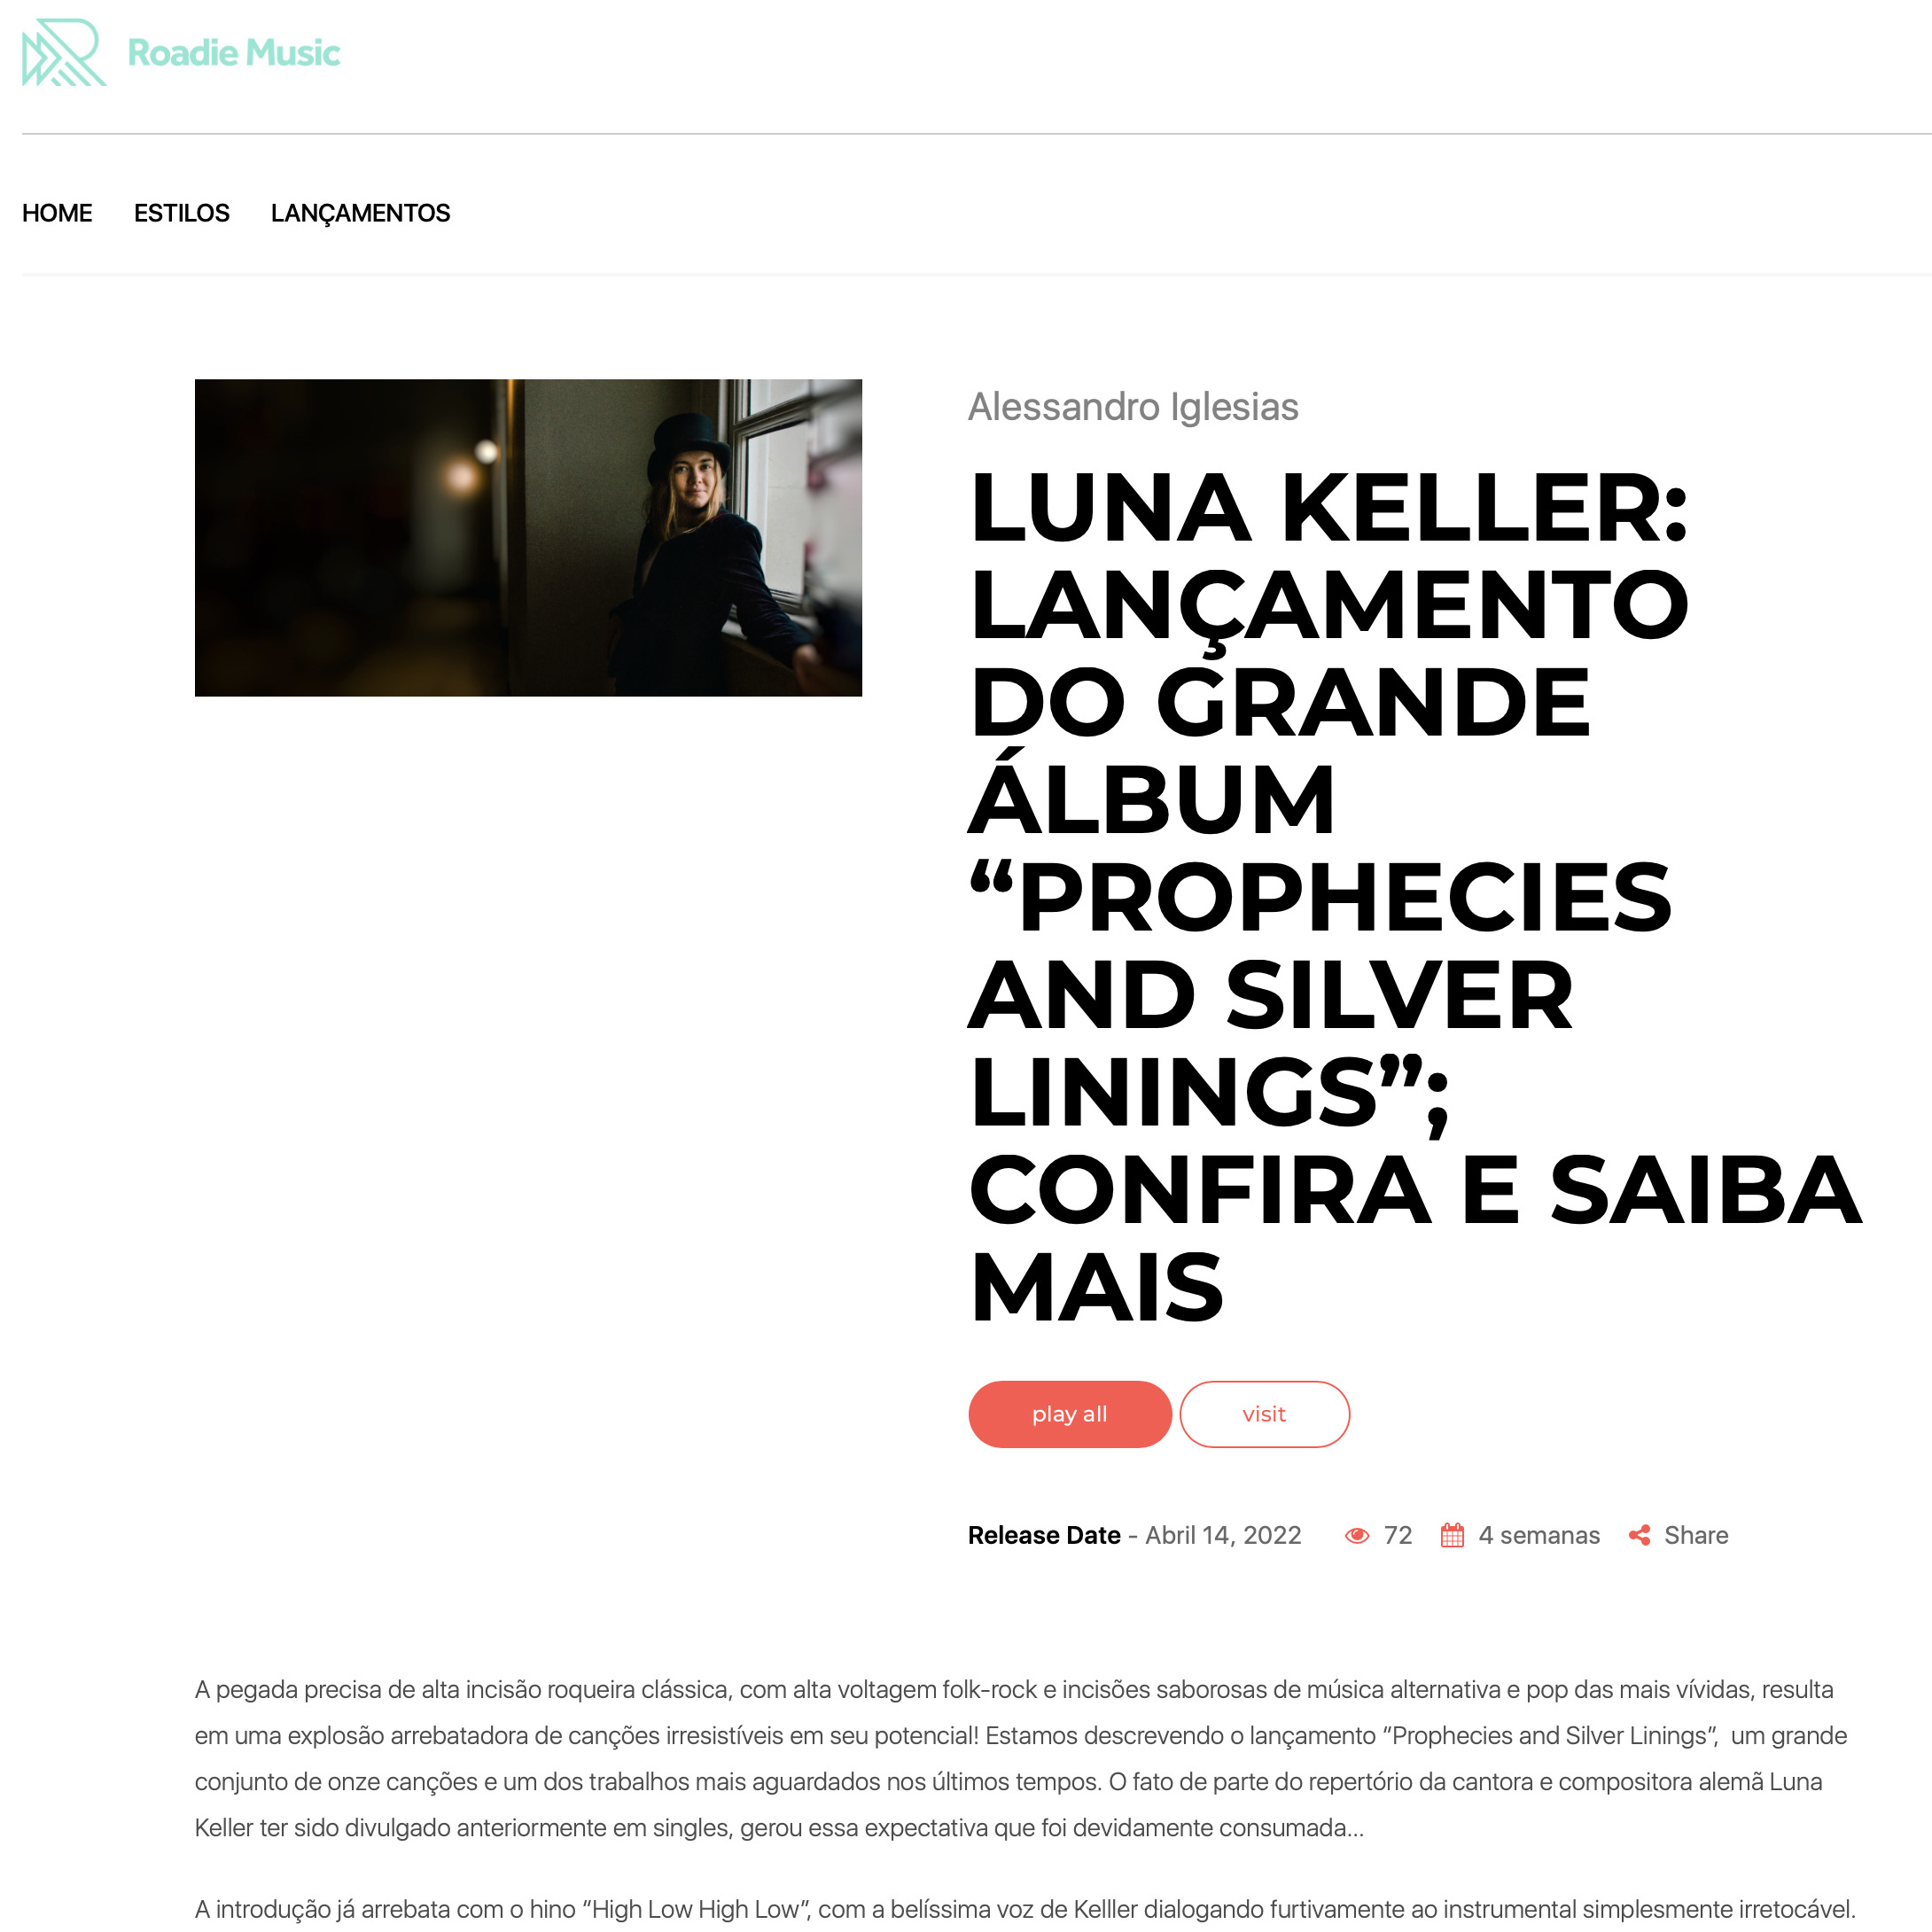 Roadie Music - Luna Keller - Prophecies and silver linings